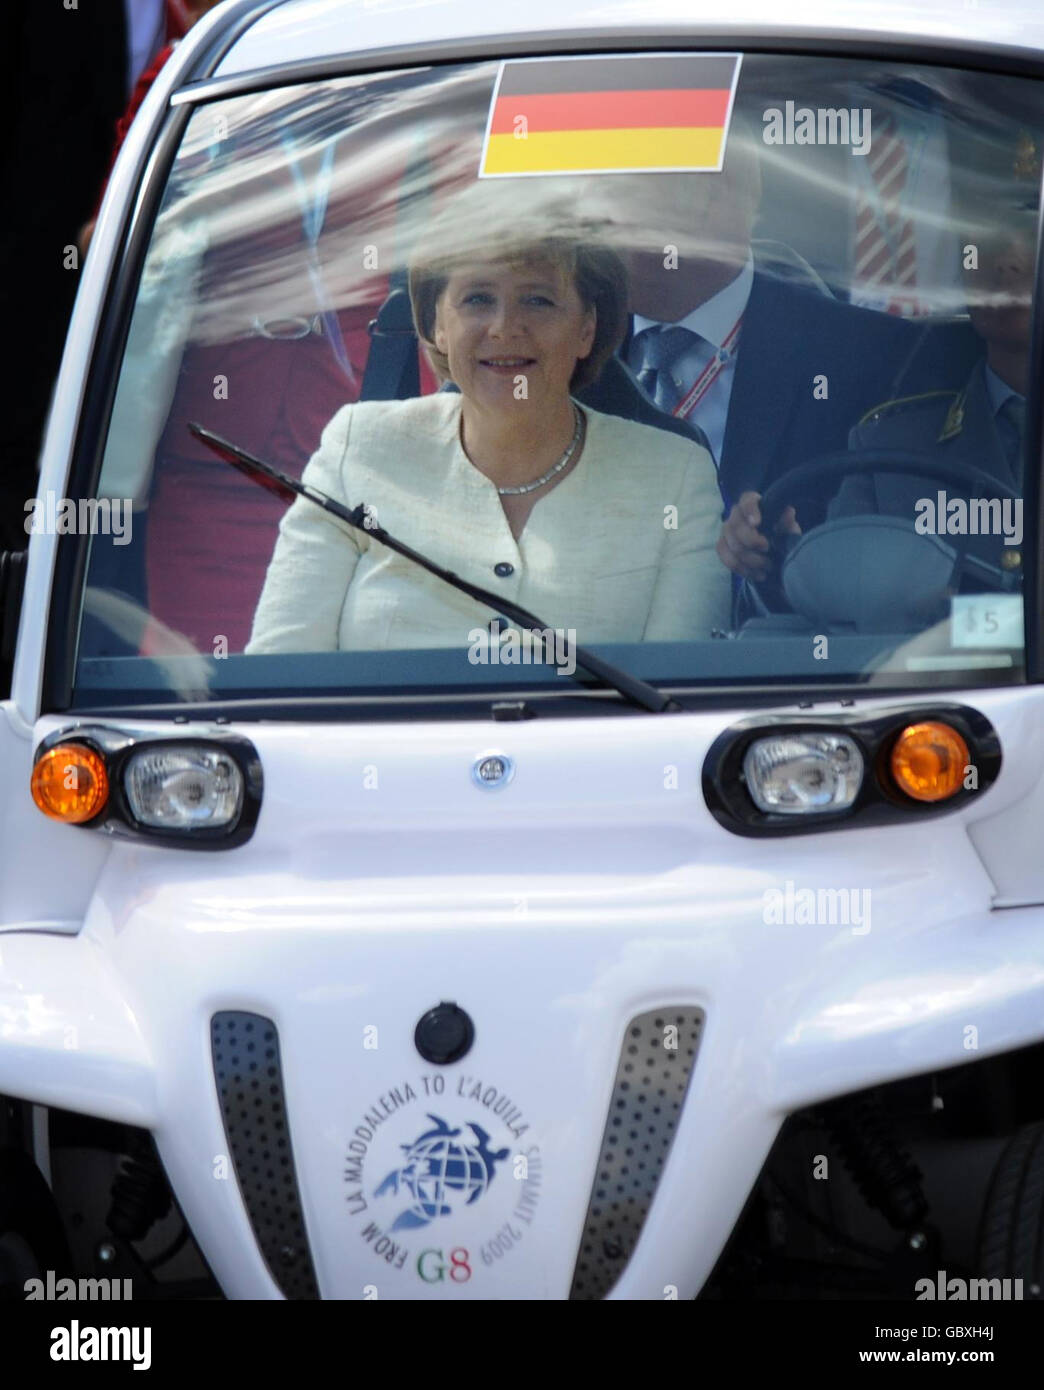 La canciller alemana Angela Merkel llega en buggy de golf para asistir al Foro de las Grandes Economías con otros G8 líderes en la Cumbre de G8 en L'Aquila, Italia. Foto de stock